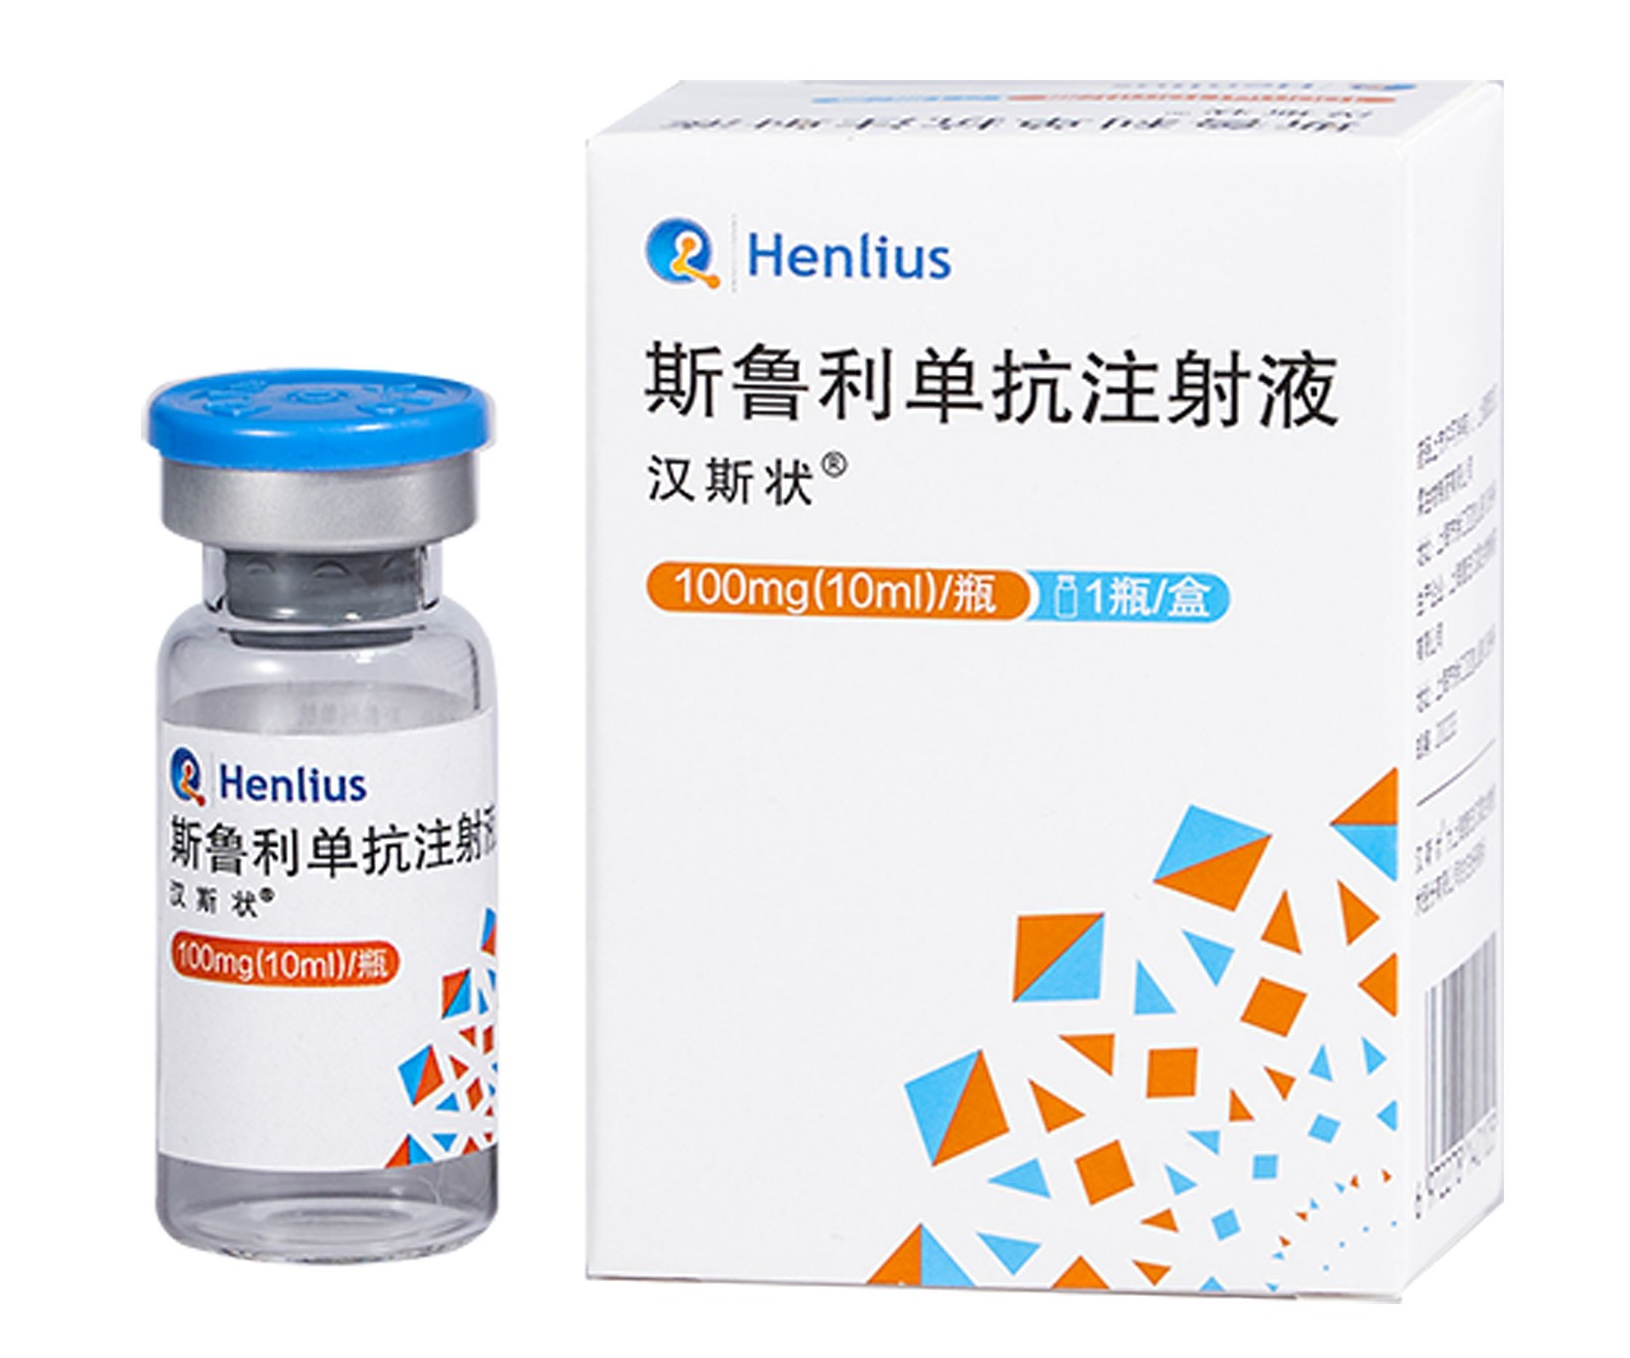 斯鲁利单抗（H药，serplulimab，HLX10)